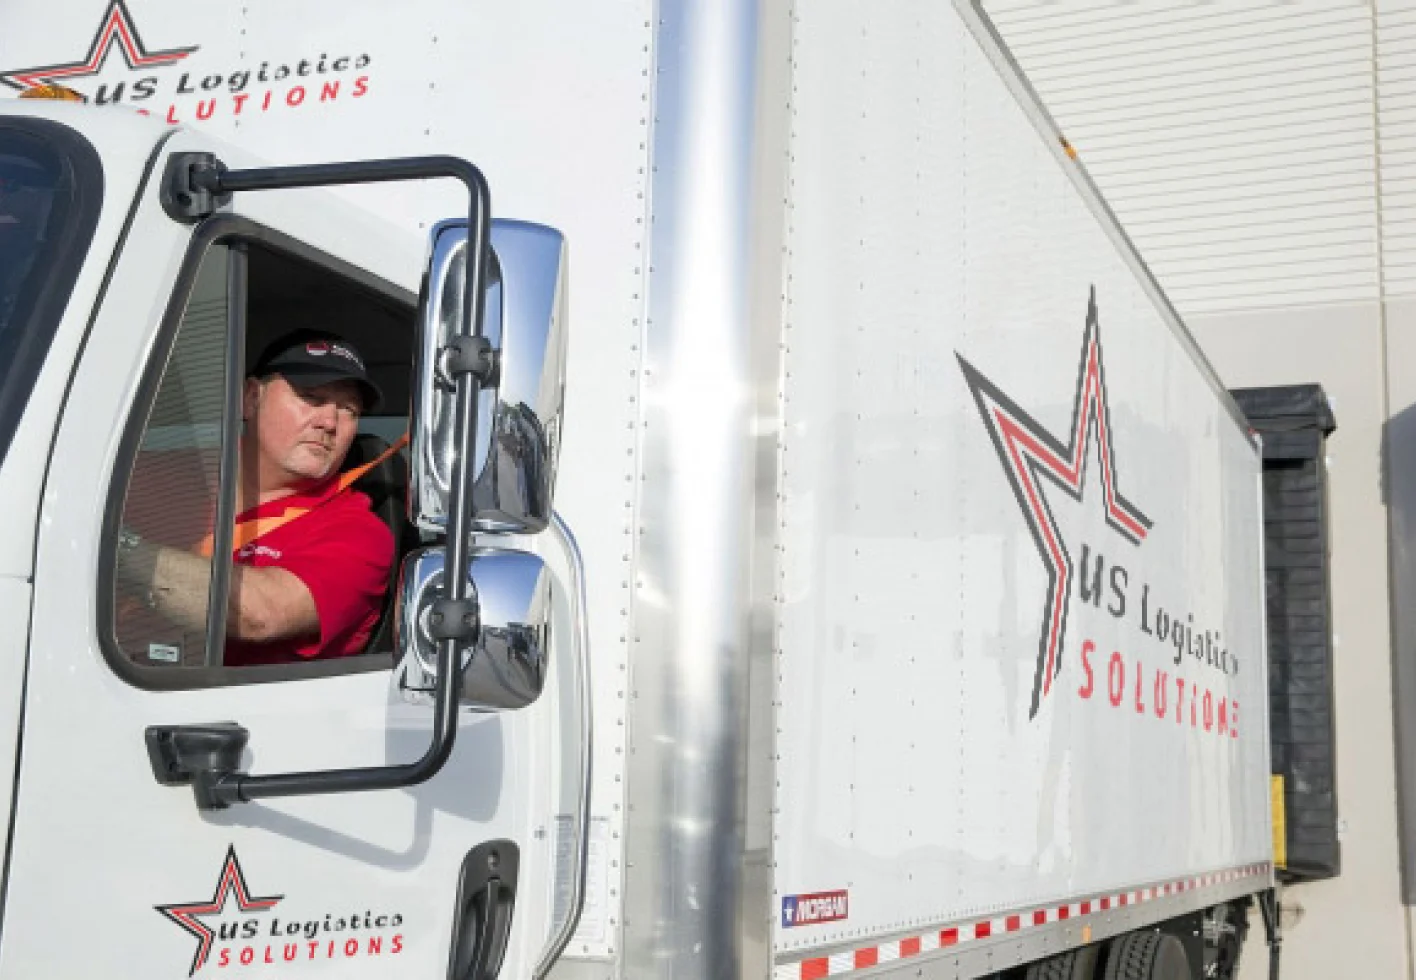 Foto des Fahrers von US Logistics Solutions, der aus dem Fenster eines Lastwagens schaut